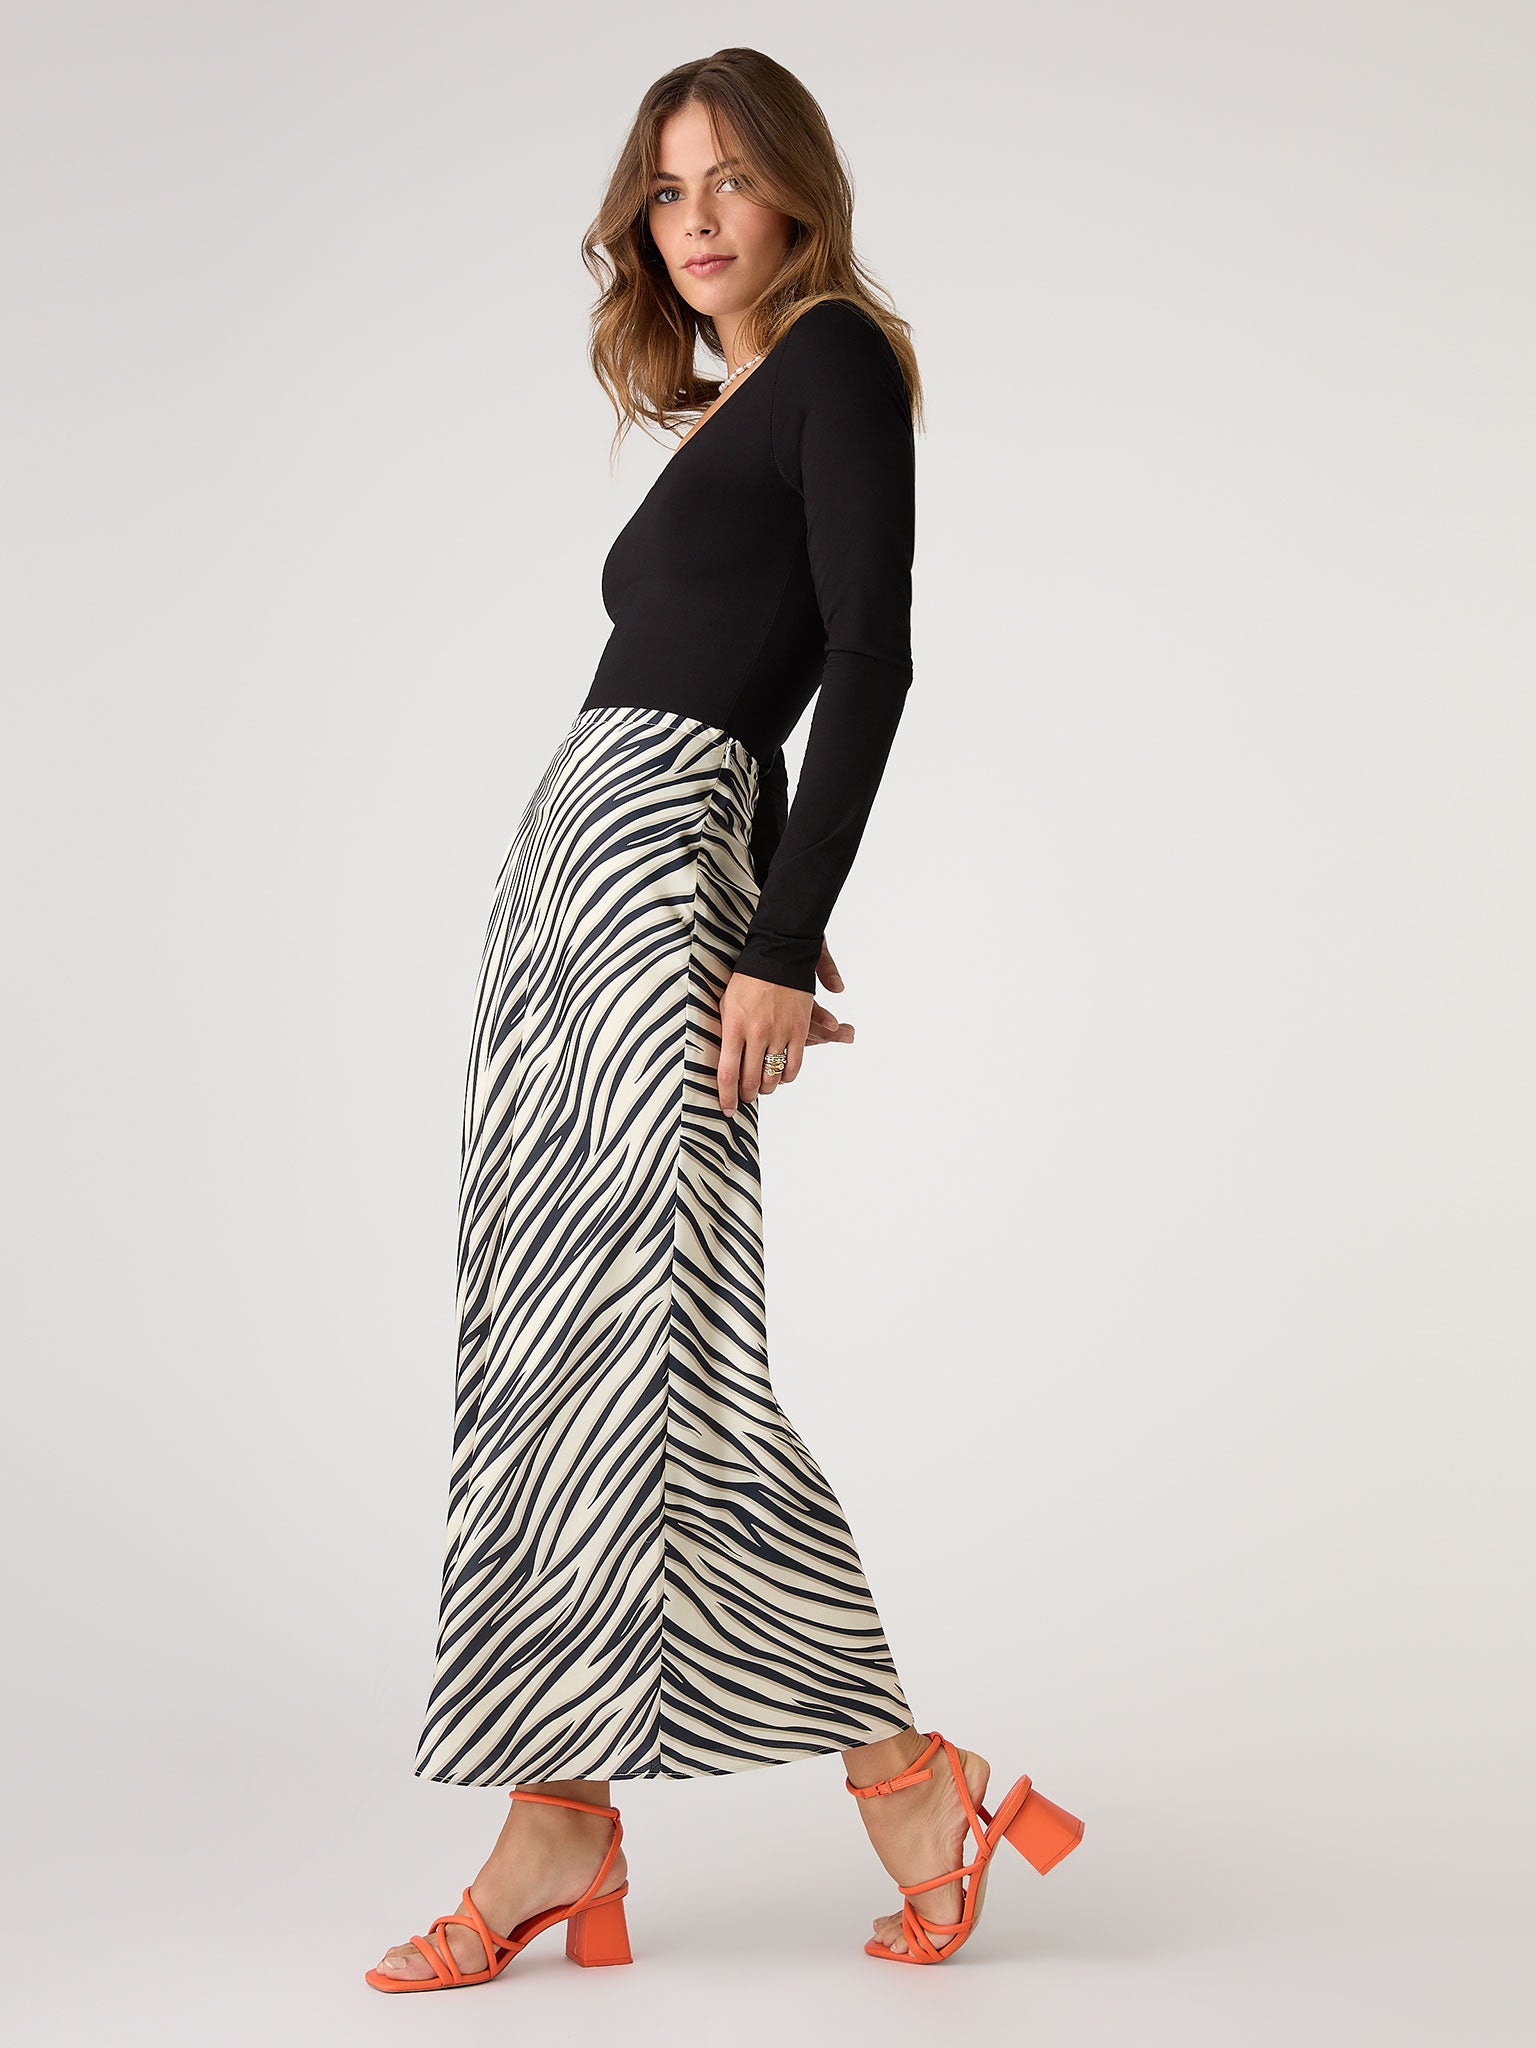 Stella Bias Satin Skirt in Beige Zebra | OMNES | Skirts | Sustainable ...